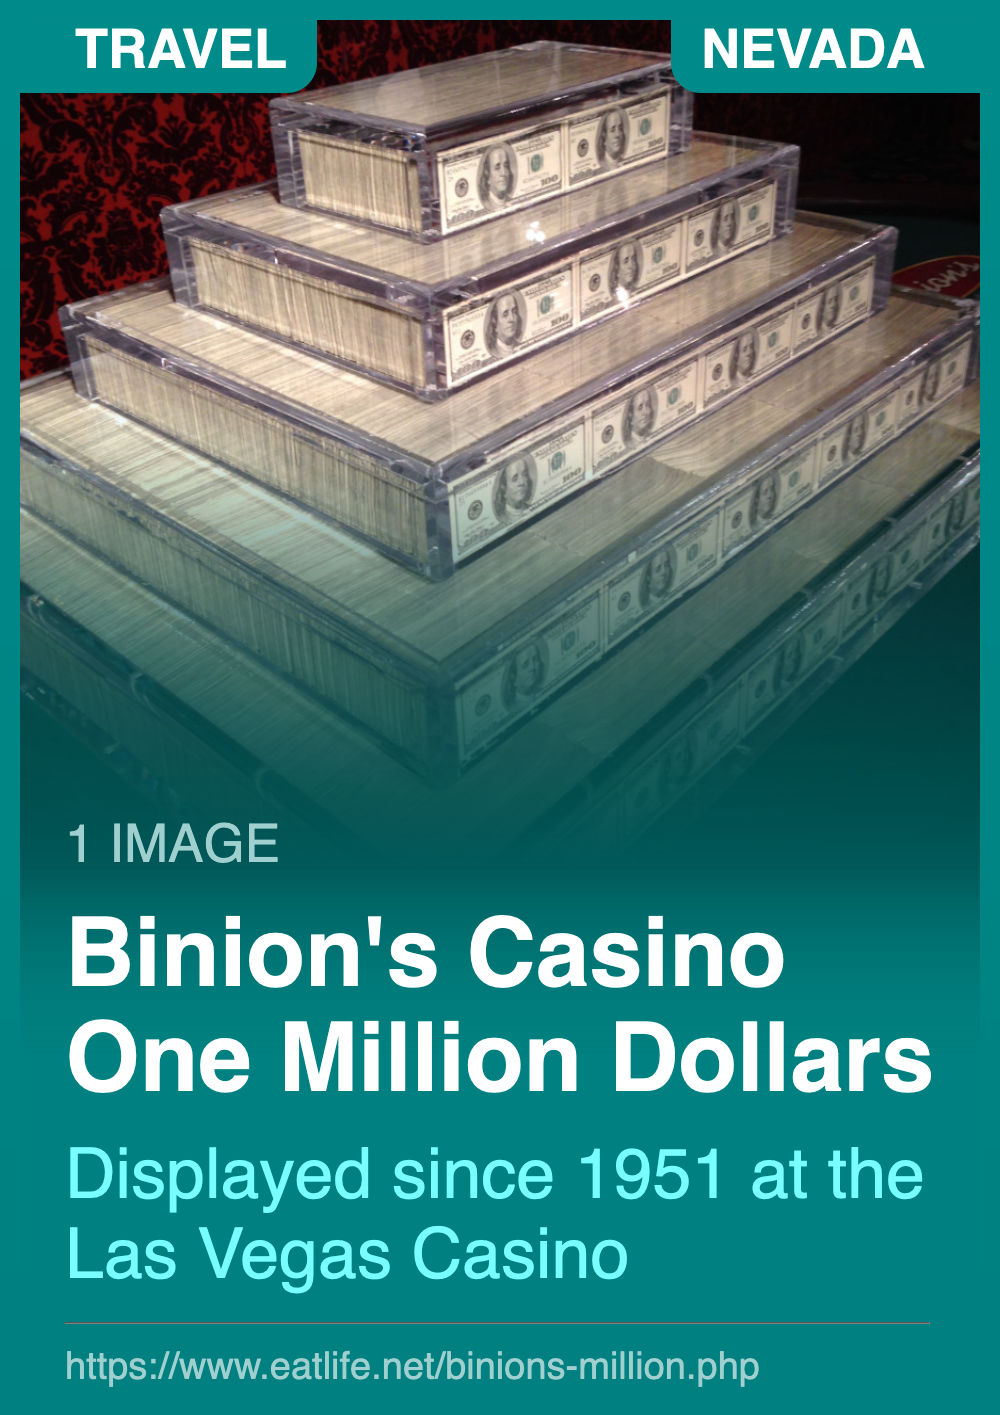 Binion's One Million Dollars